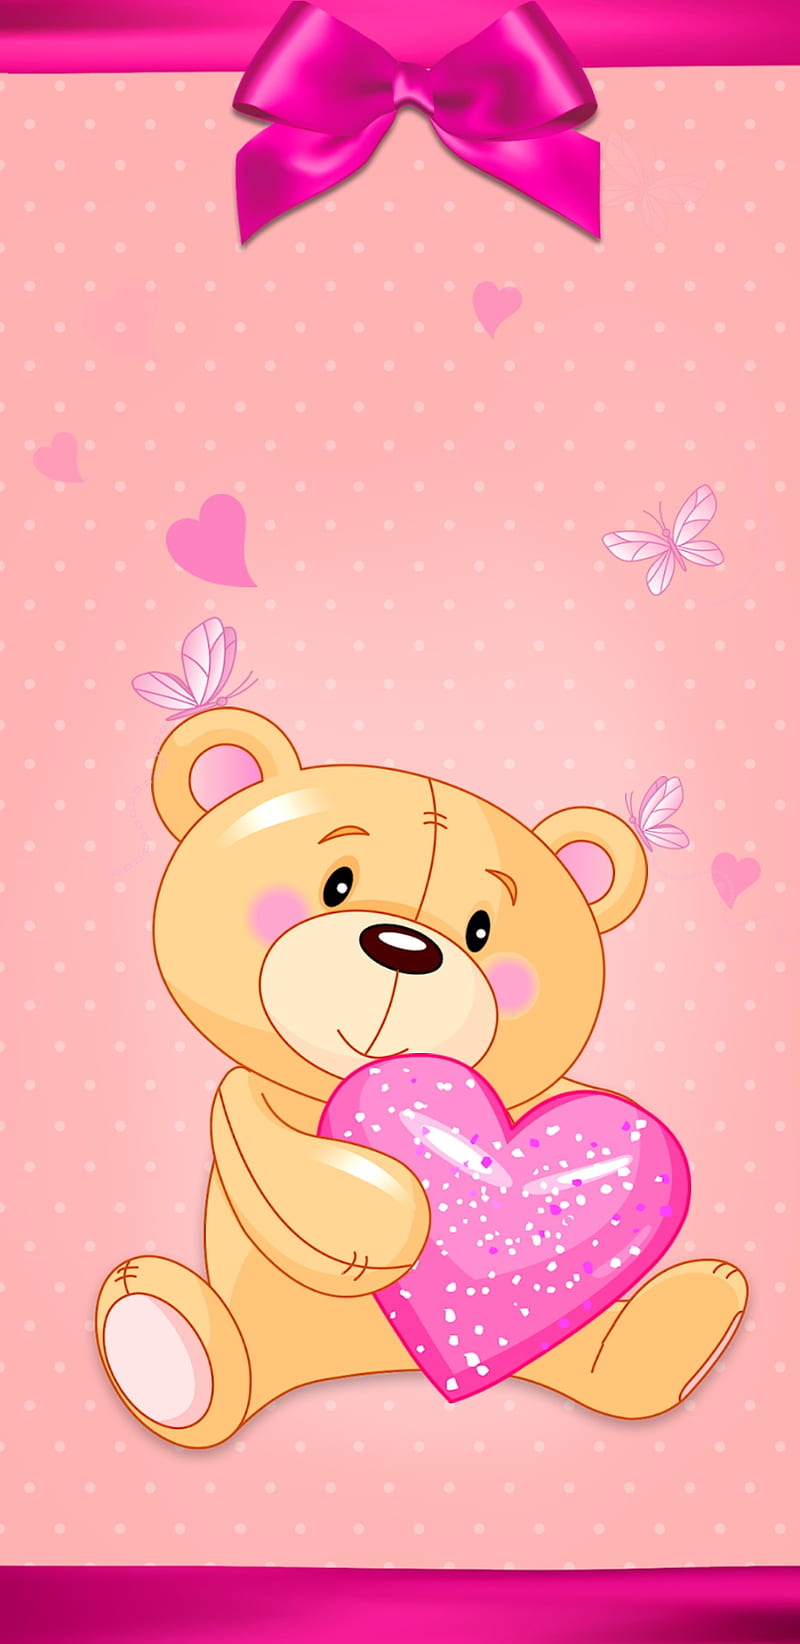 Cute Teddy Bear, baby, background, black, blend, drawn, girl ...